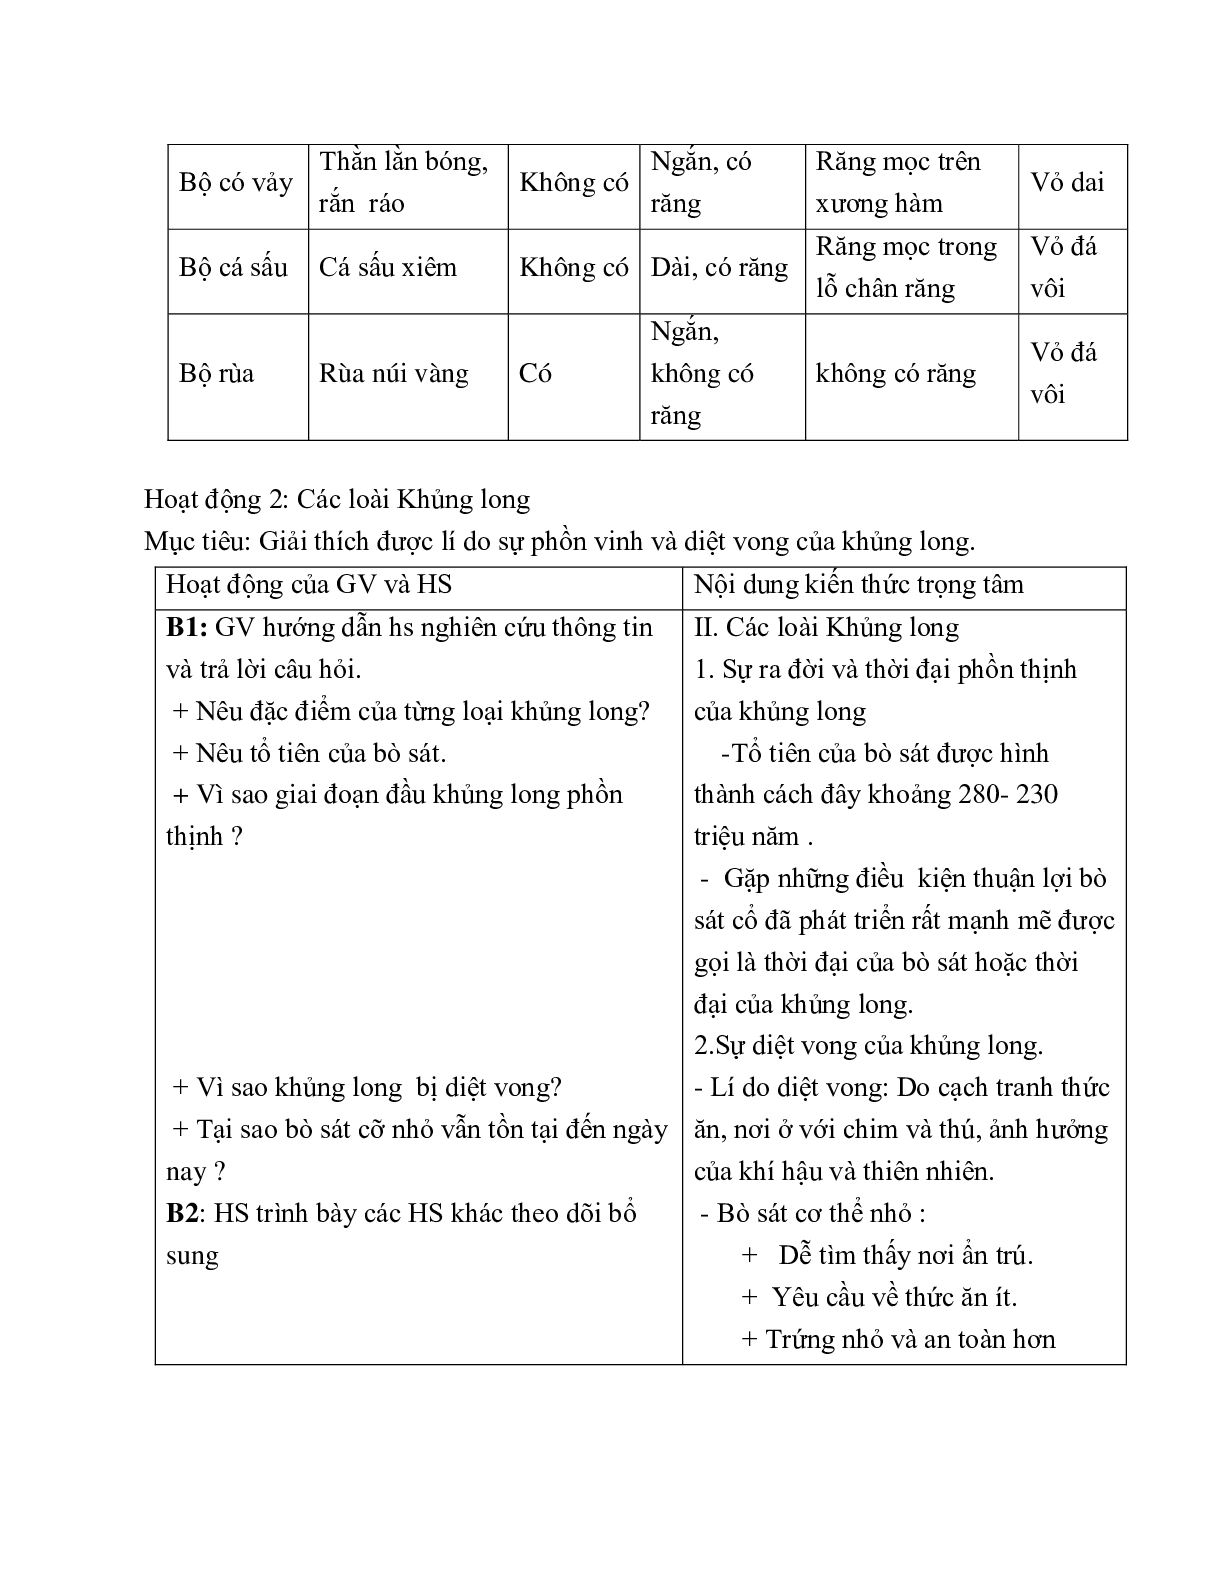 Giáo án Sinh học 7 Bài 40: Đa dạng và đặc điểm chung của lớp Bò sát mới nhất (trang 3)